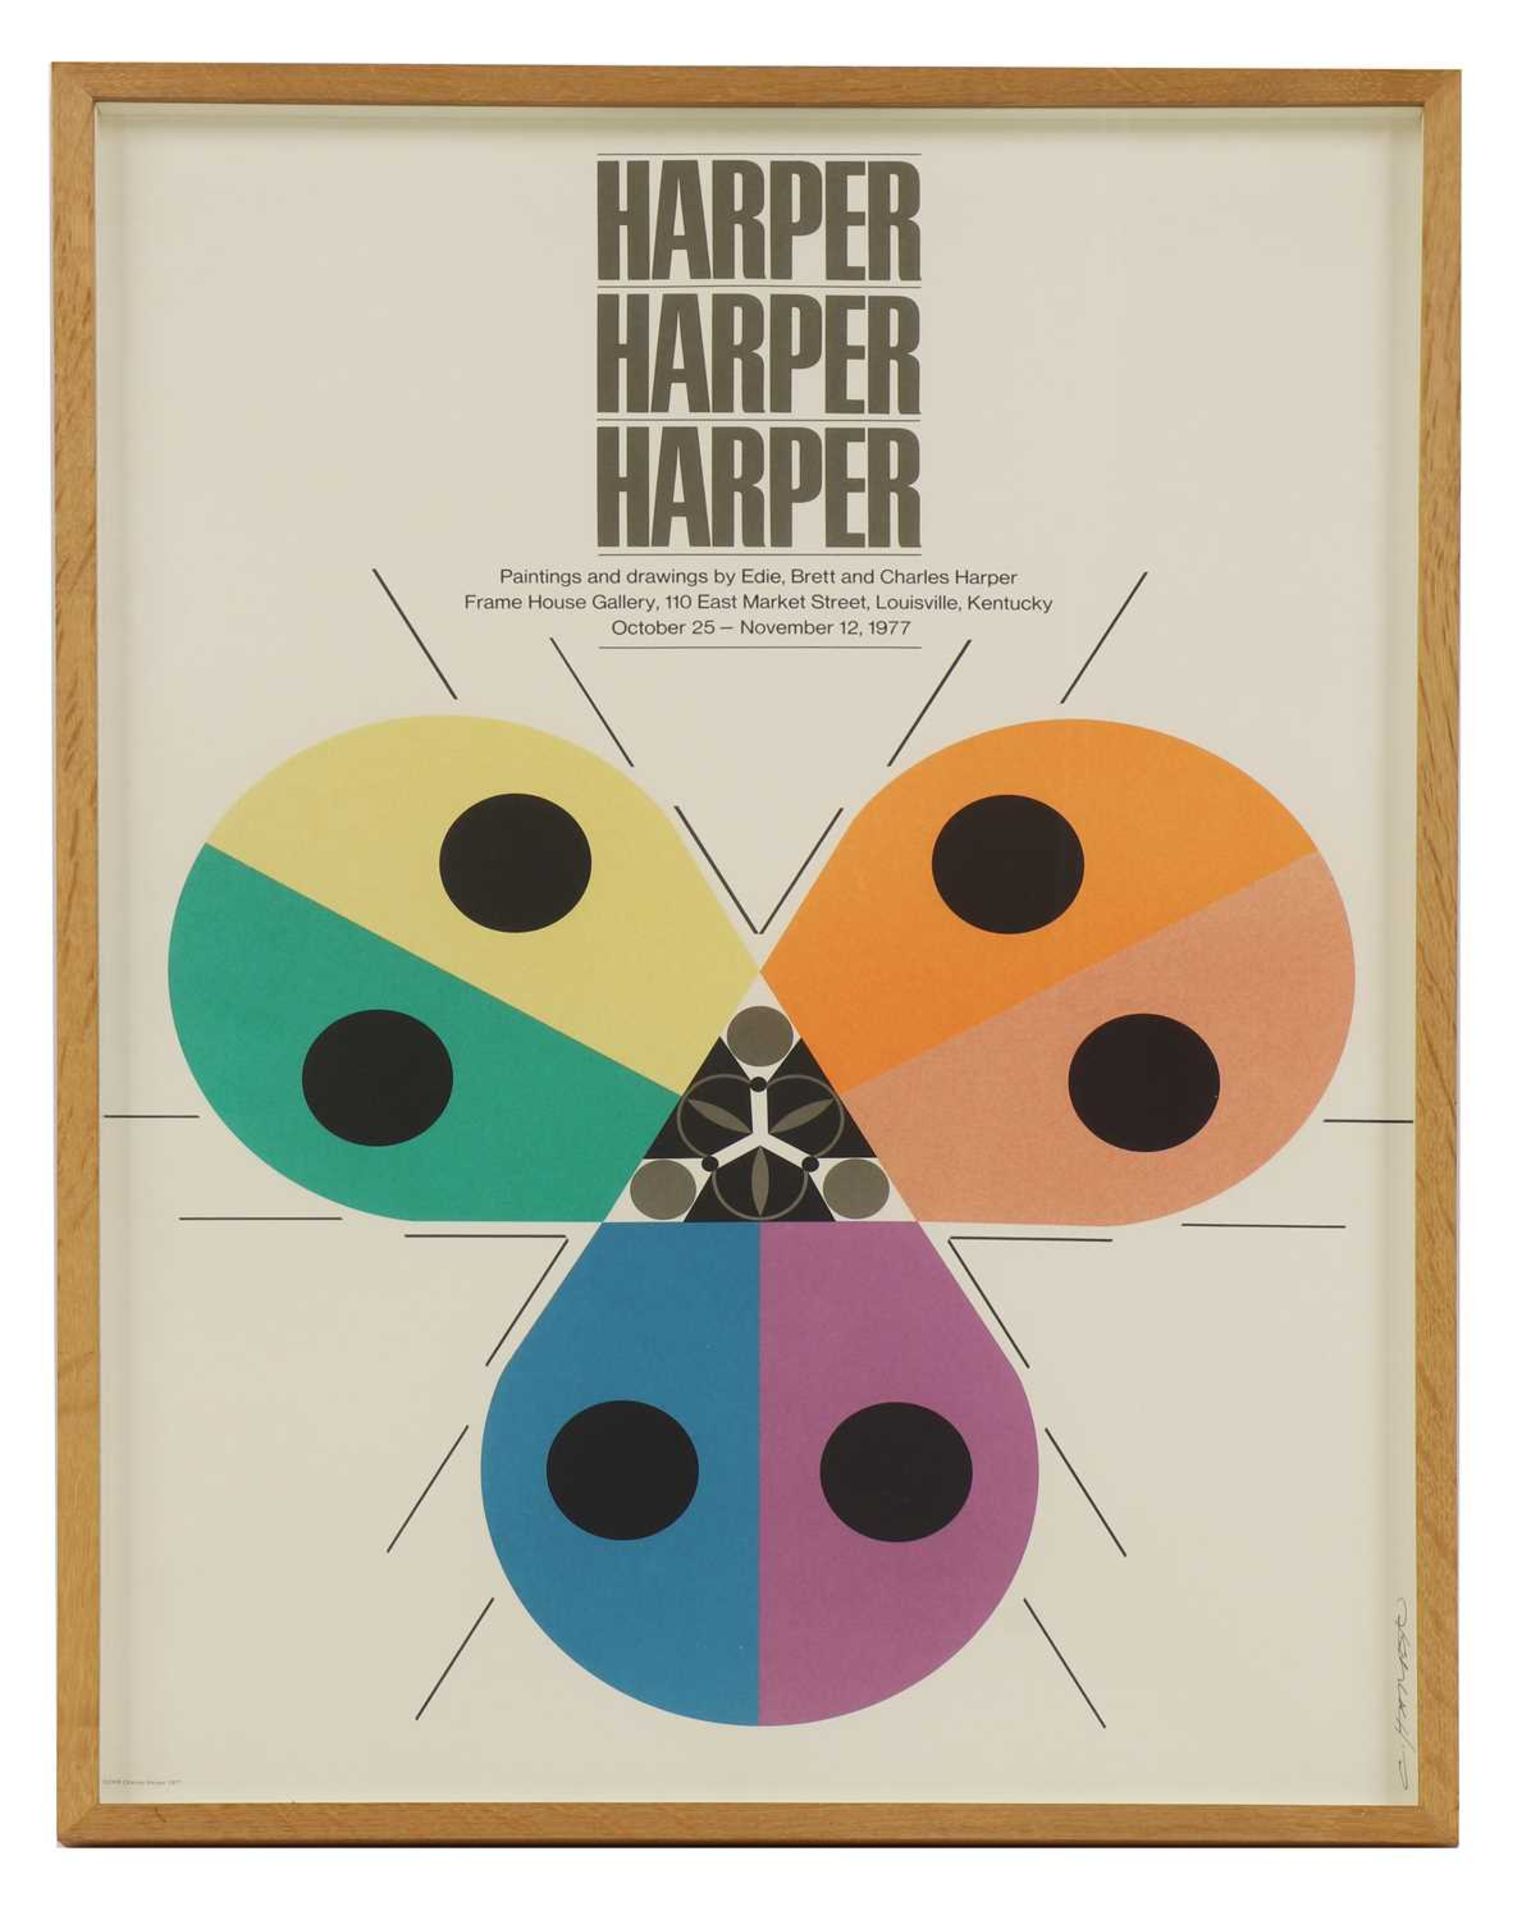 'Harper, Harper, Harper - Paintings and drawings by Edie, Brett & Charles Harper'